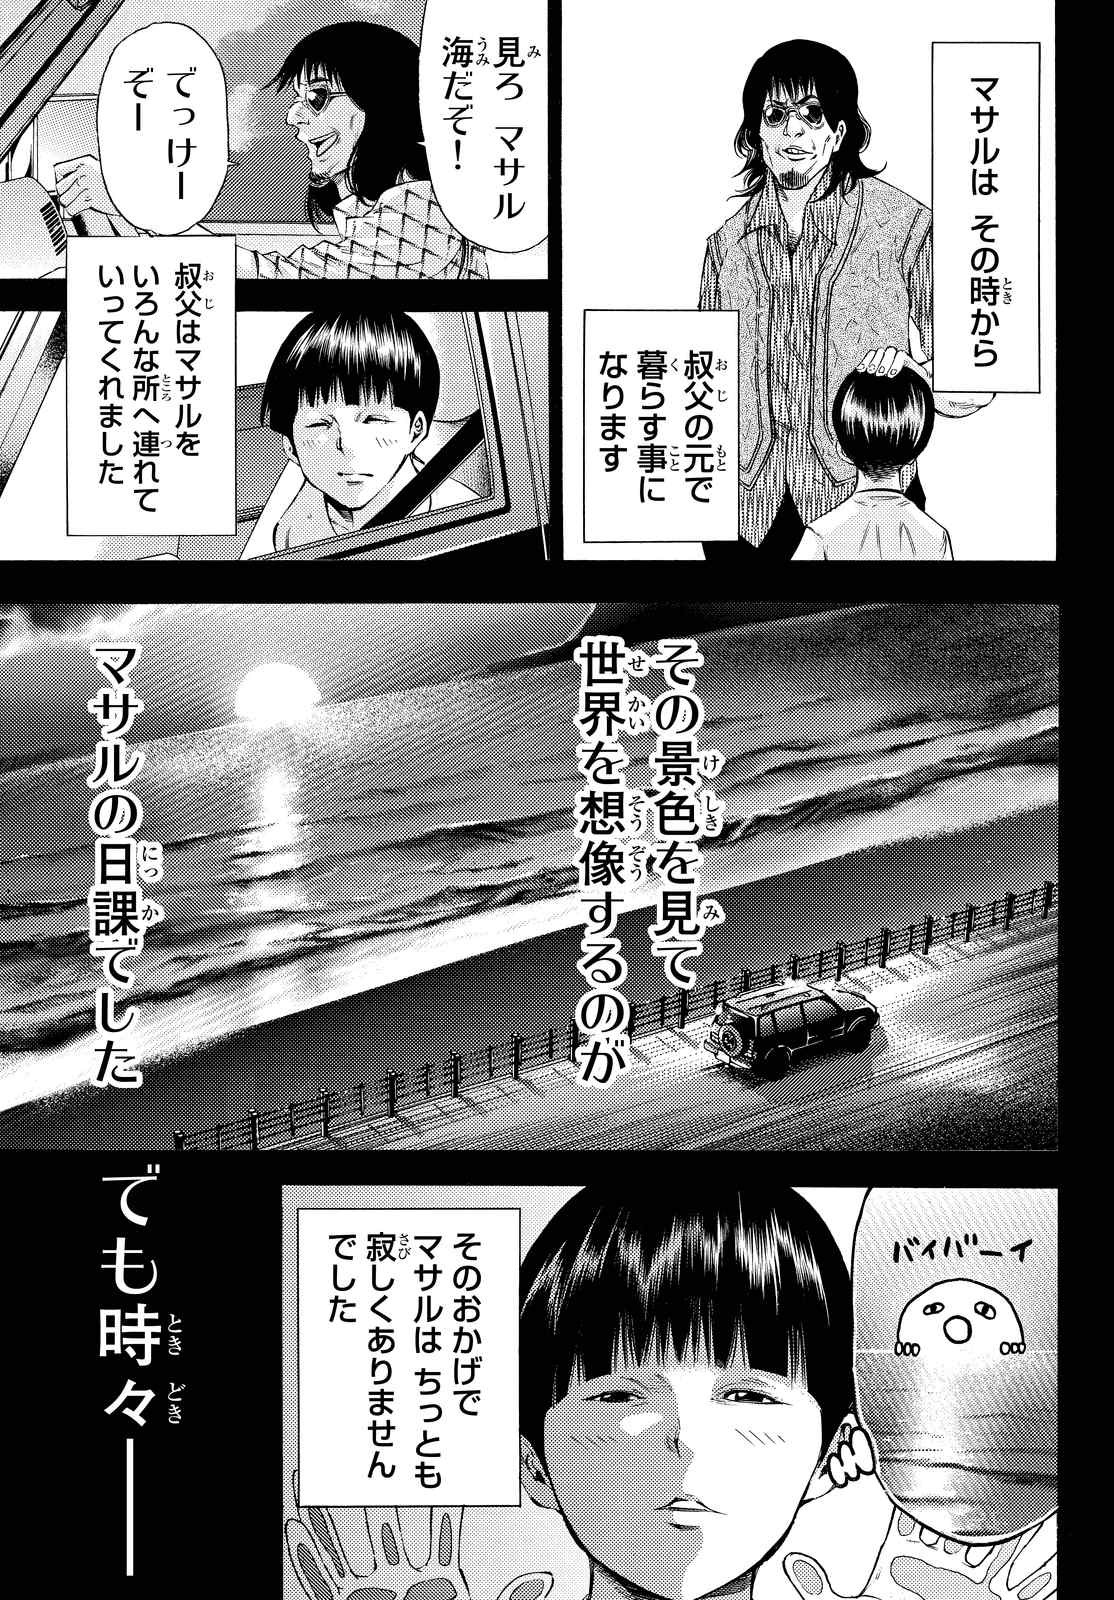 Kamisama no Ituori - Chapter 155 - Page 3